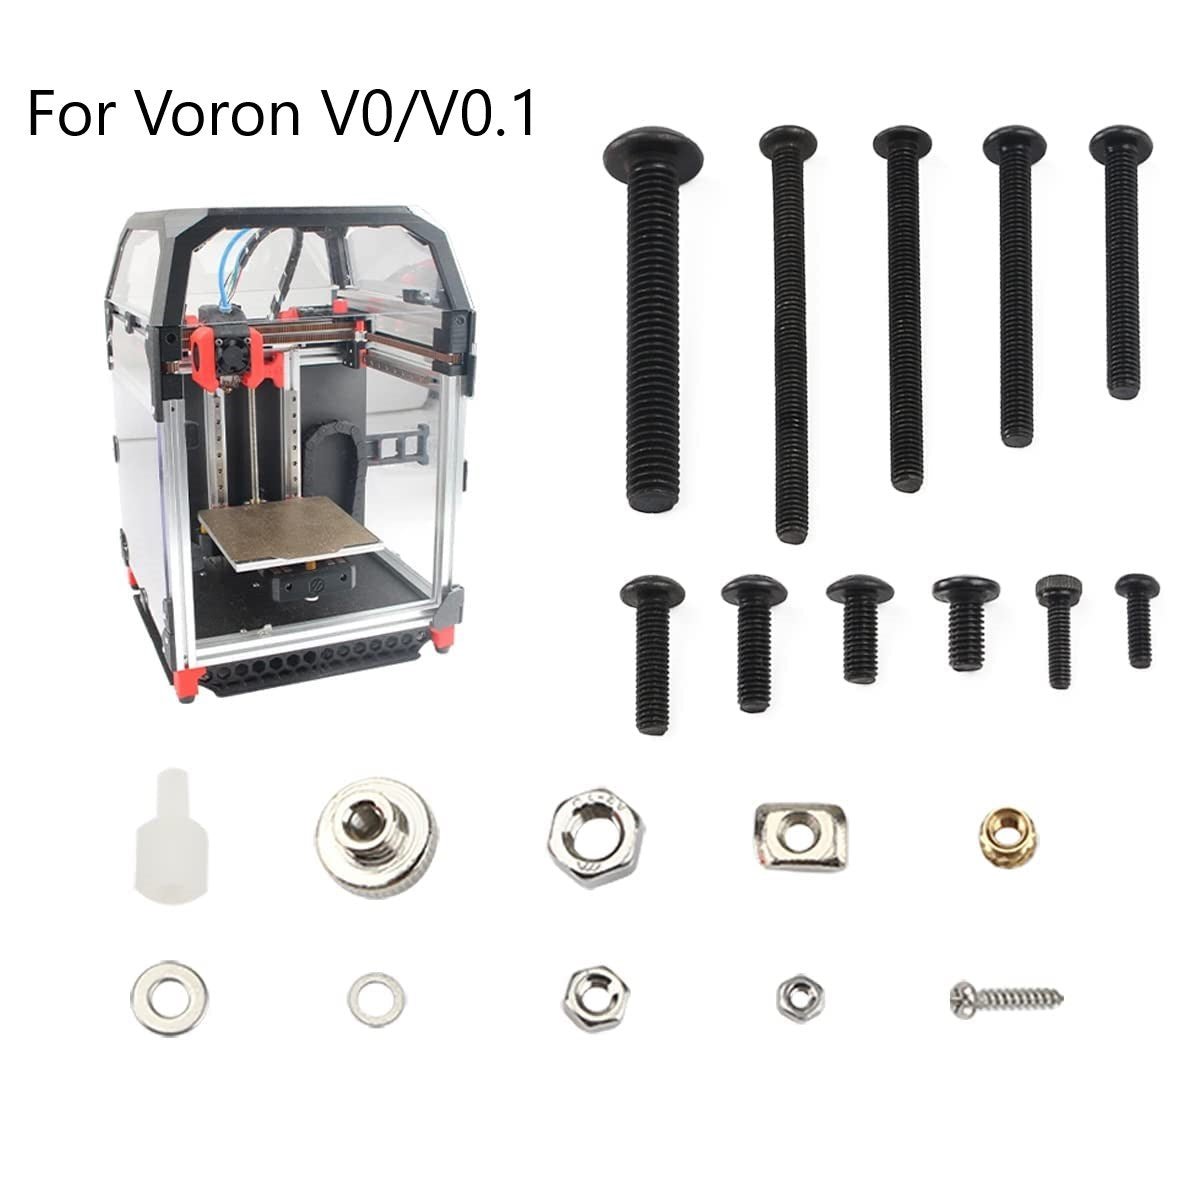 Full Fastener Set for Voron V0/V0.1 3D Printer - Screws, Nuts, Washers, Spacers, Hexnuts